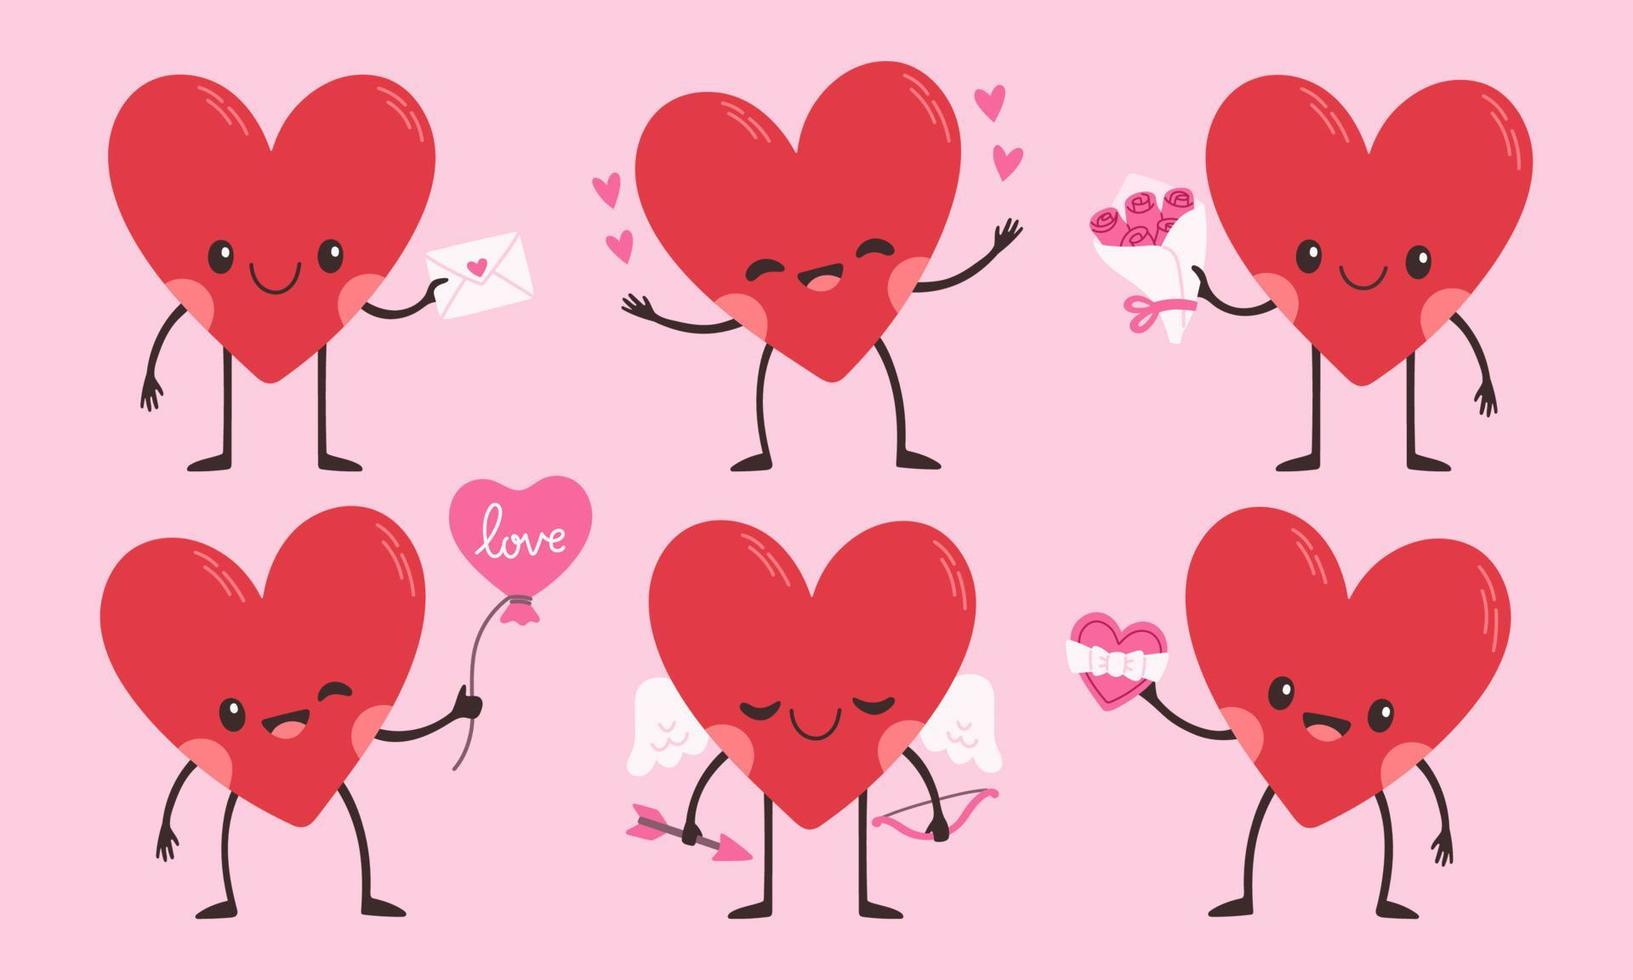 conjunto de caracteres do coração dos desenhos animados. símbolo de amor fofo com rosto, mãos e pés, vetor de emoticon de adesivos emoji